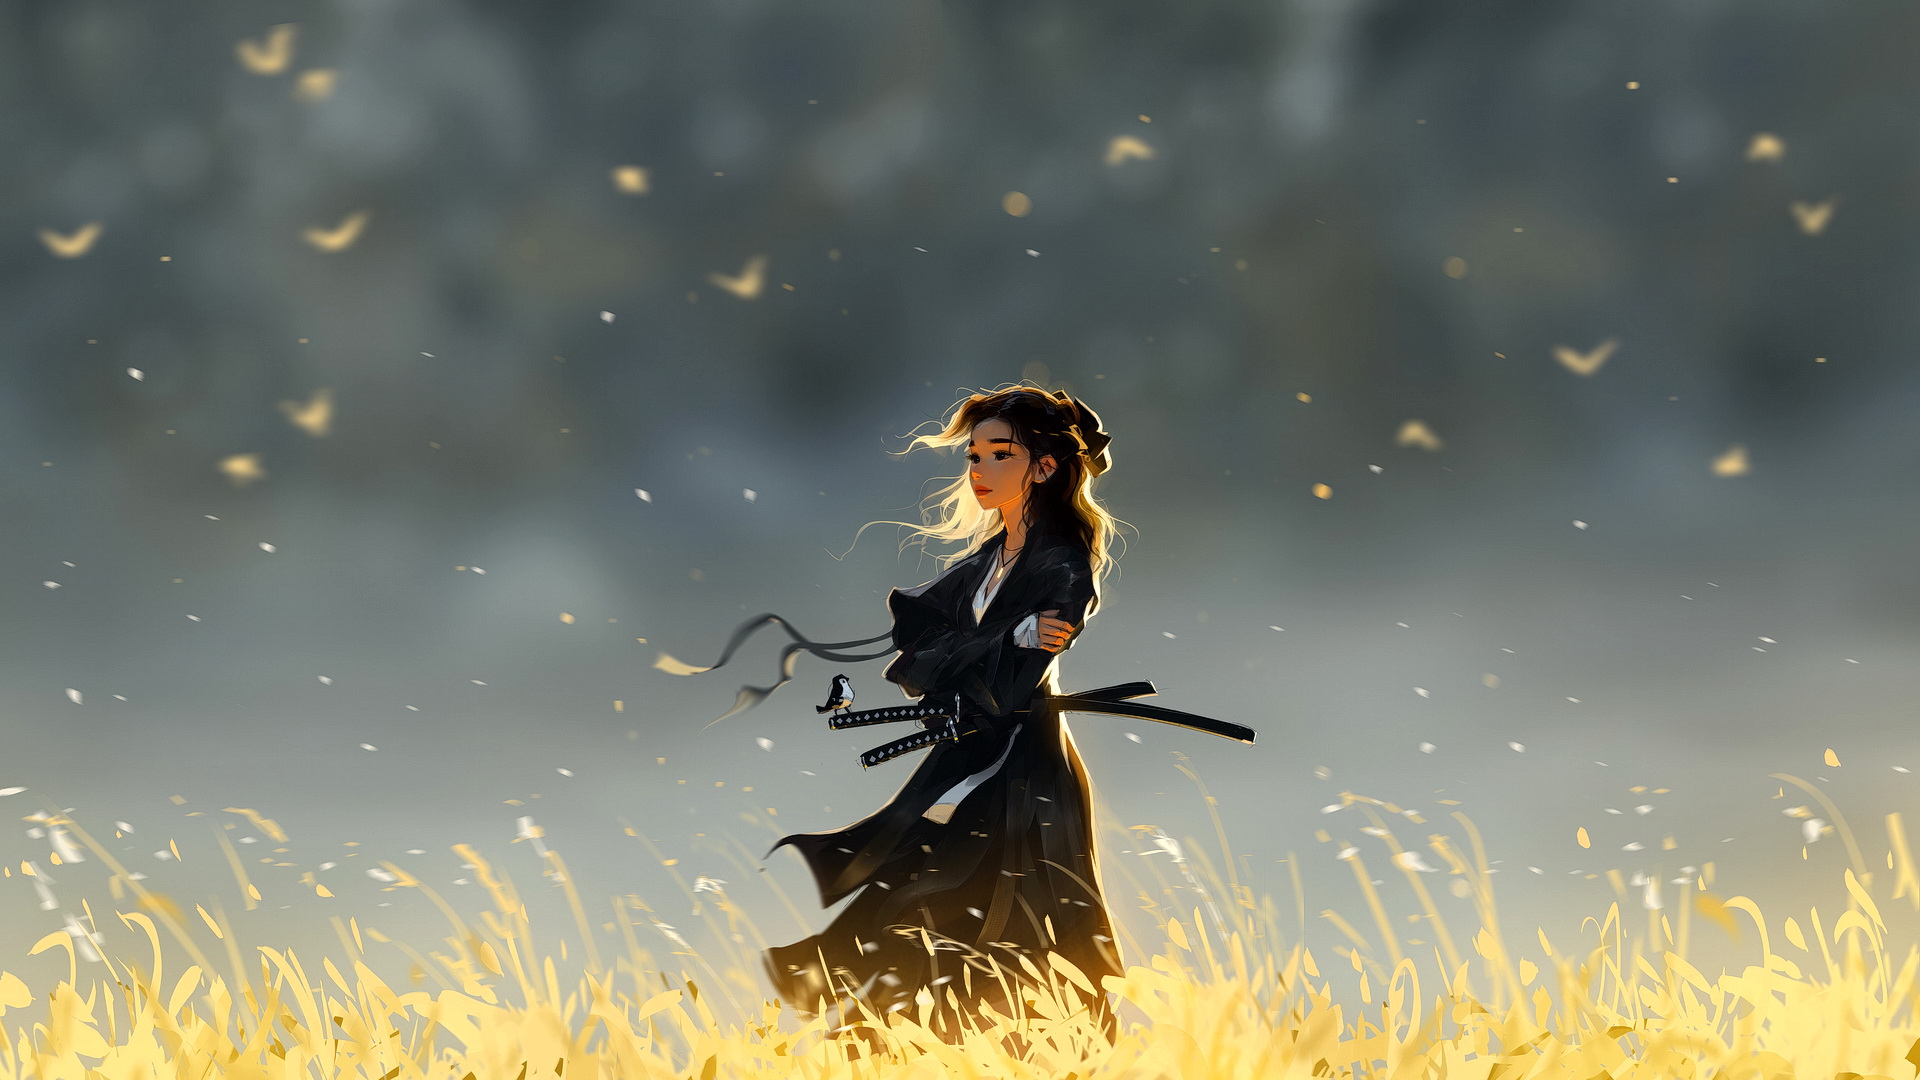 Samurai girl standing in a field